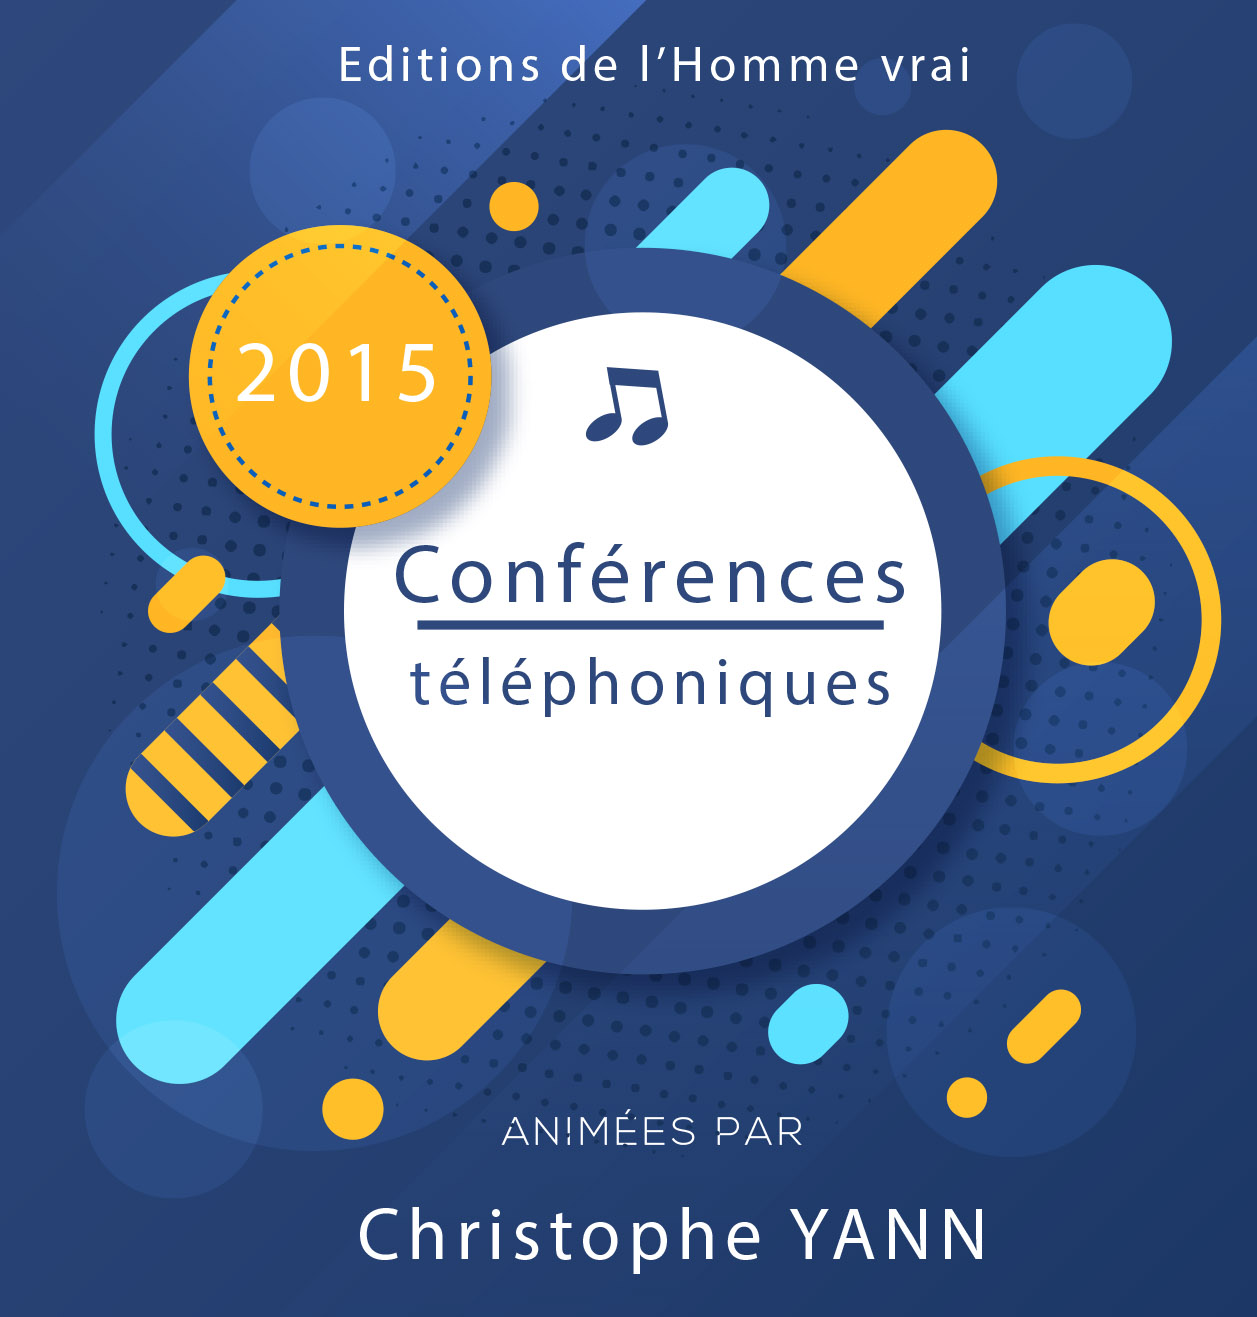 Conferences telephoniques 2015